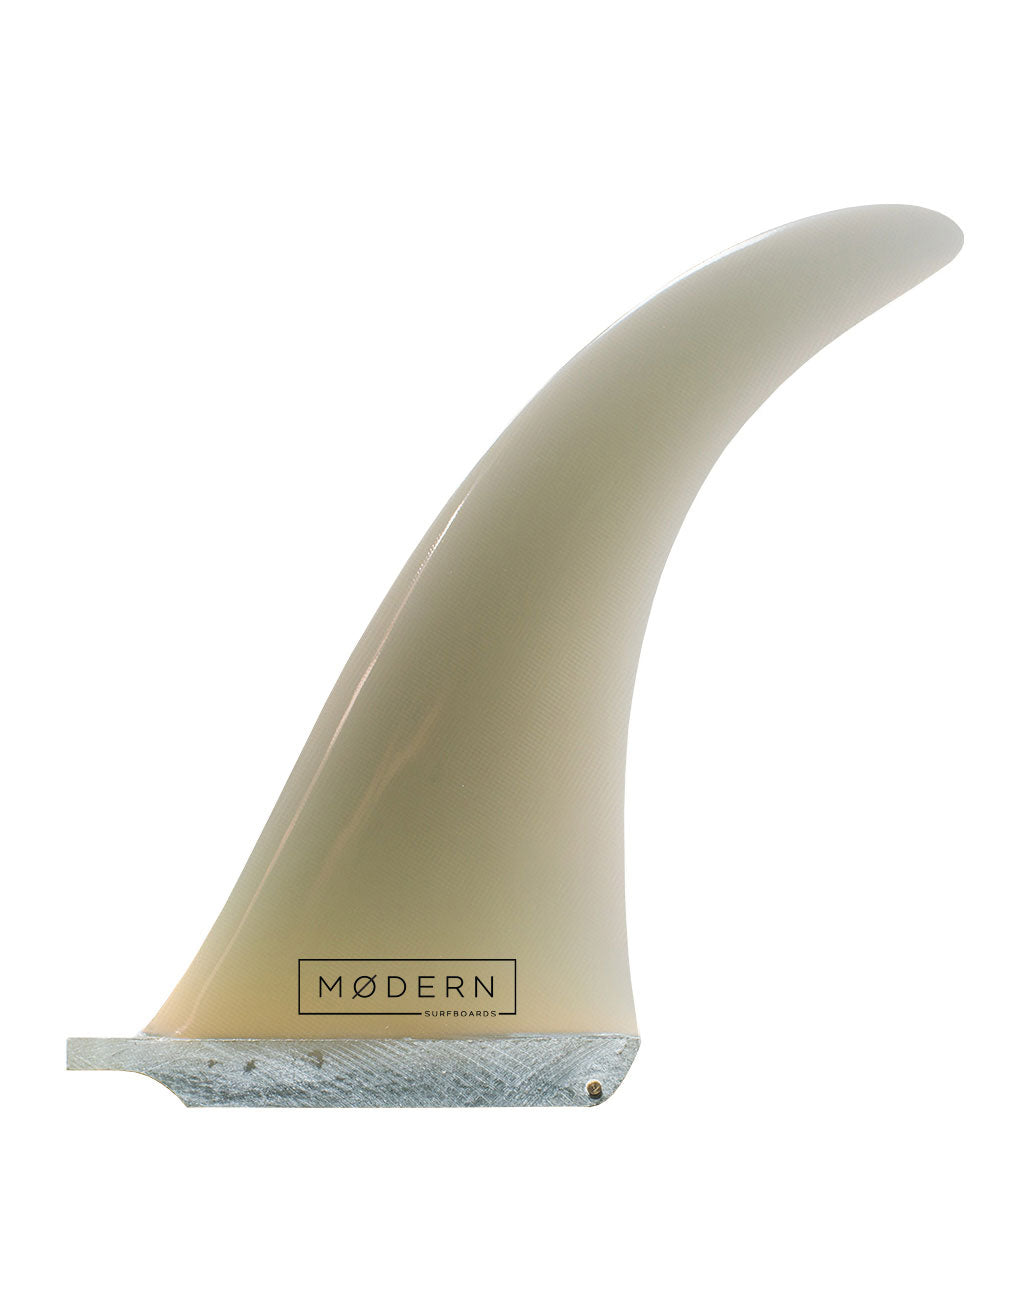 Modern Surfboard 9.5" longboard fin